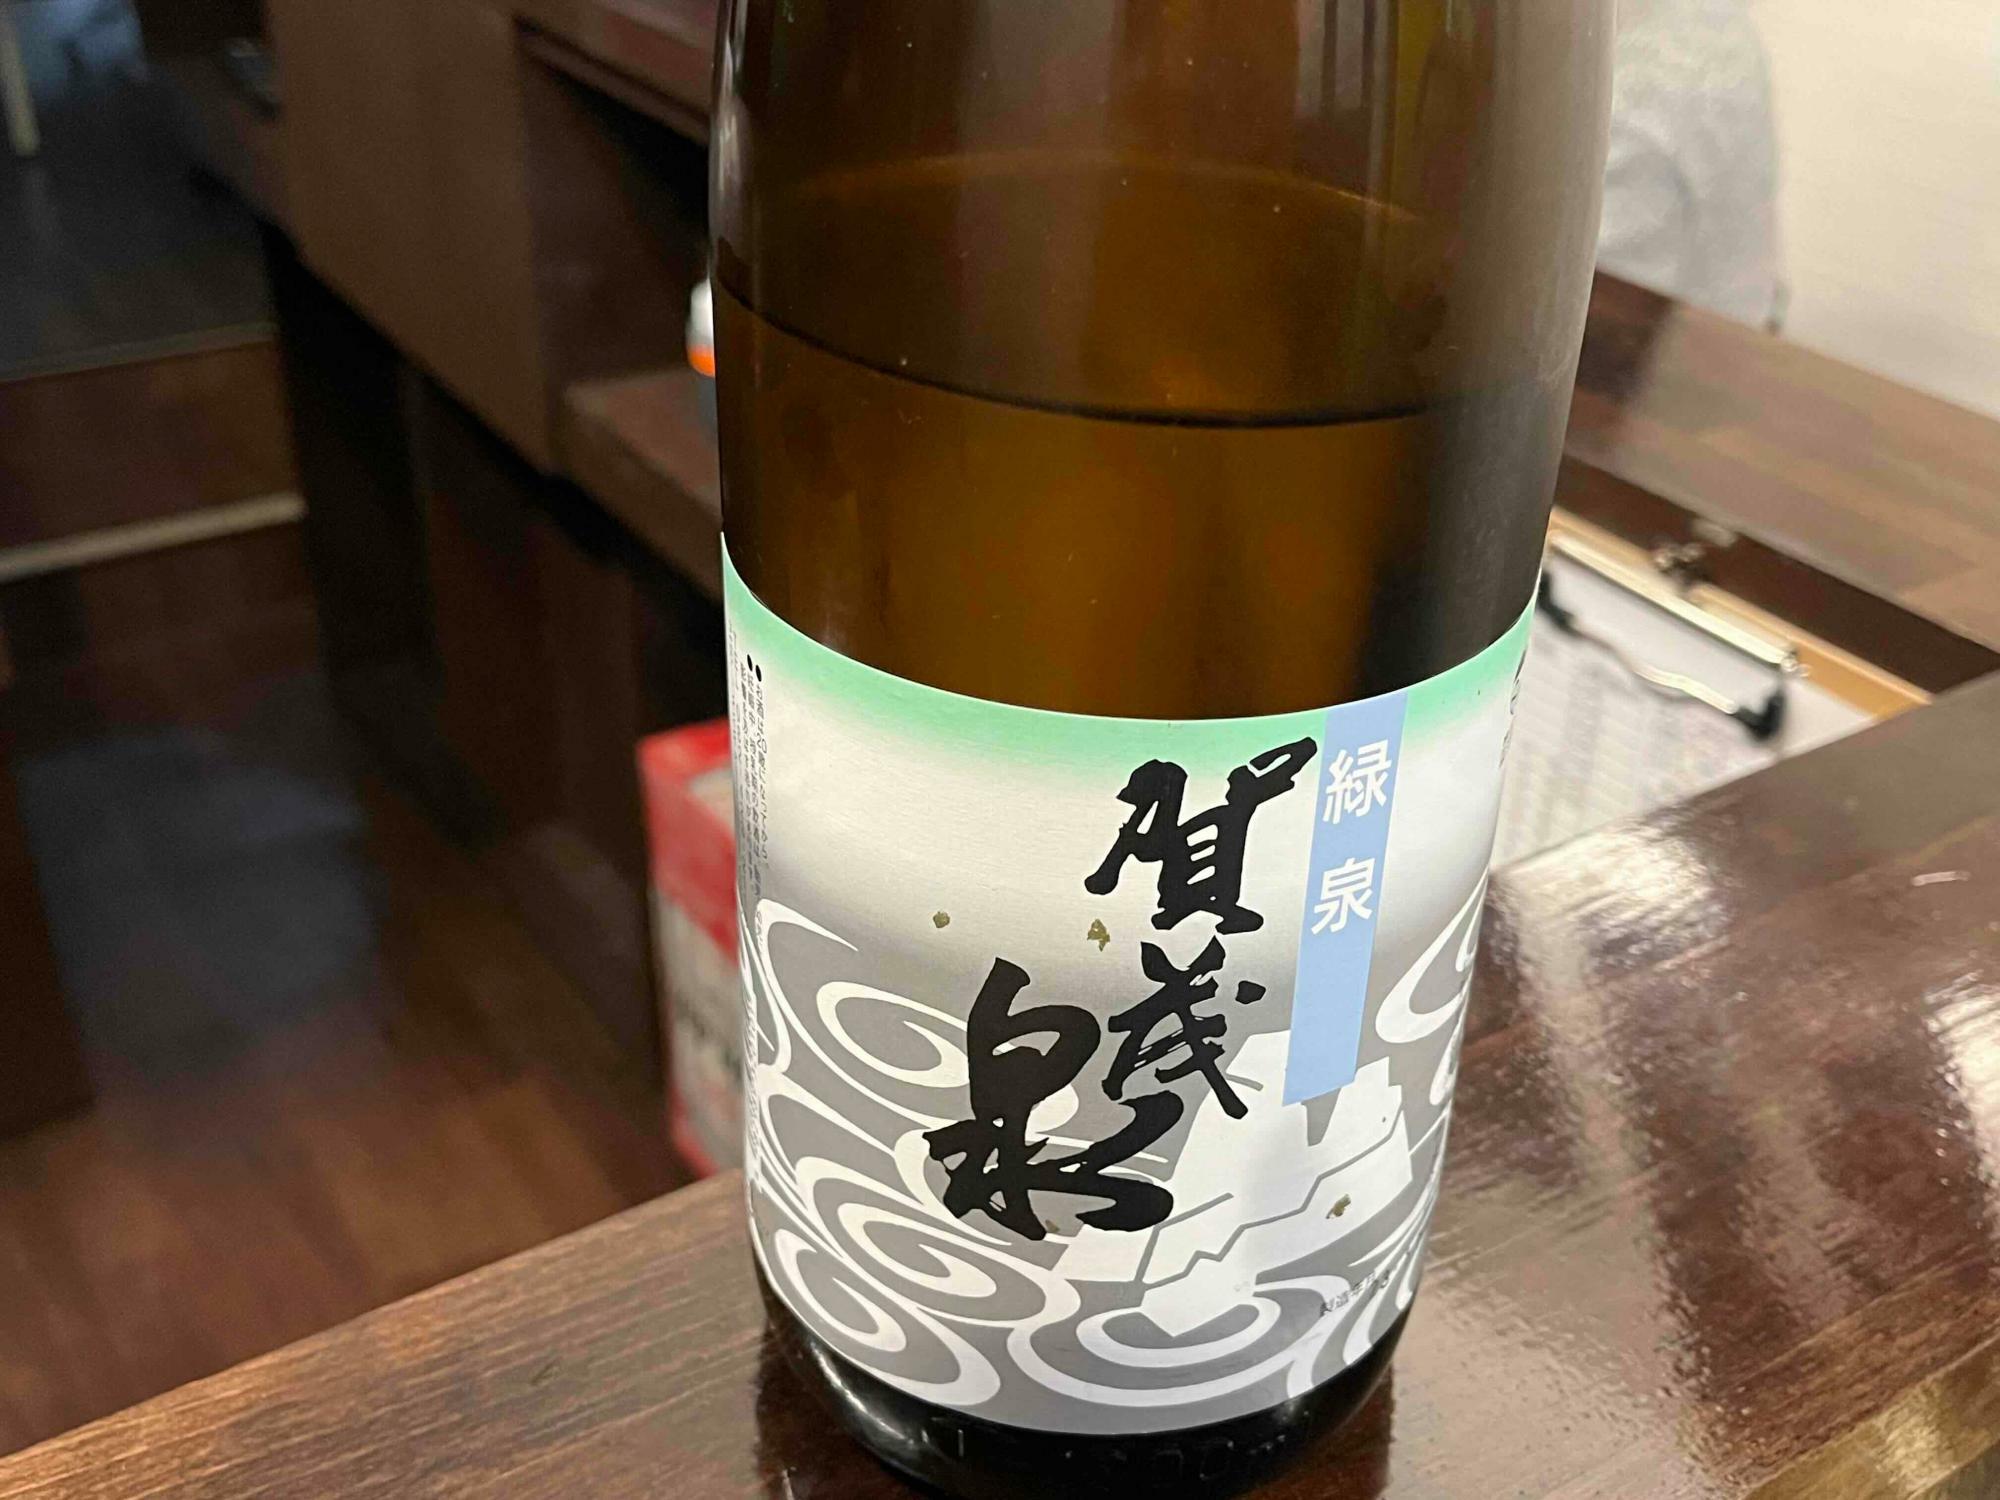 「大阪の人って地酒が好きなんですね～」と言われてちょっと照れ…なんか、知らないものを知るって快感なんですよね…